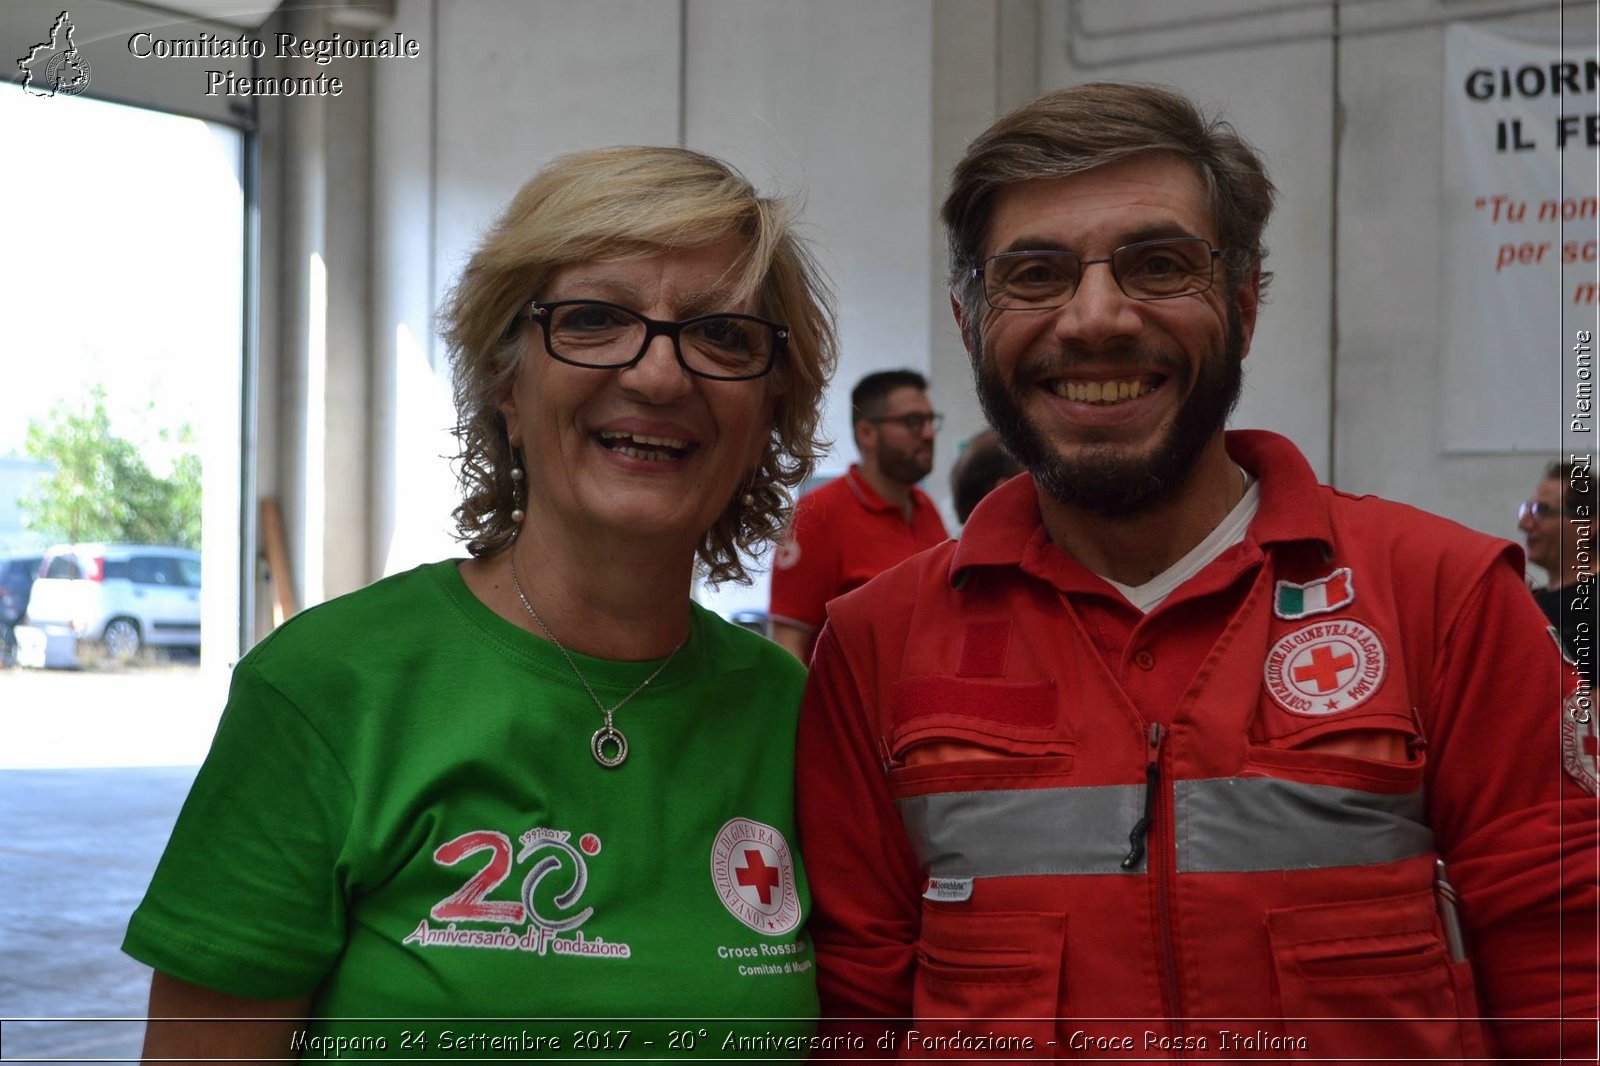 Mappano 24 Settembre 2017 - 20 Anniversario di Fondazione - Croce Rossa Italiana- Comitato Regionale del Piemonte